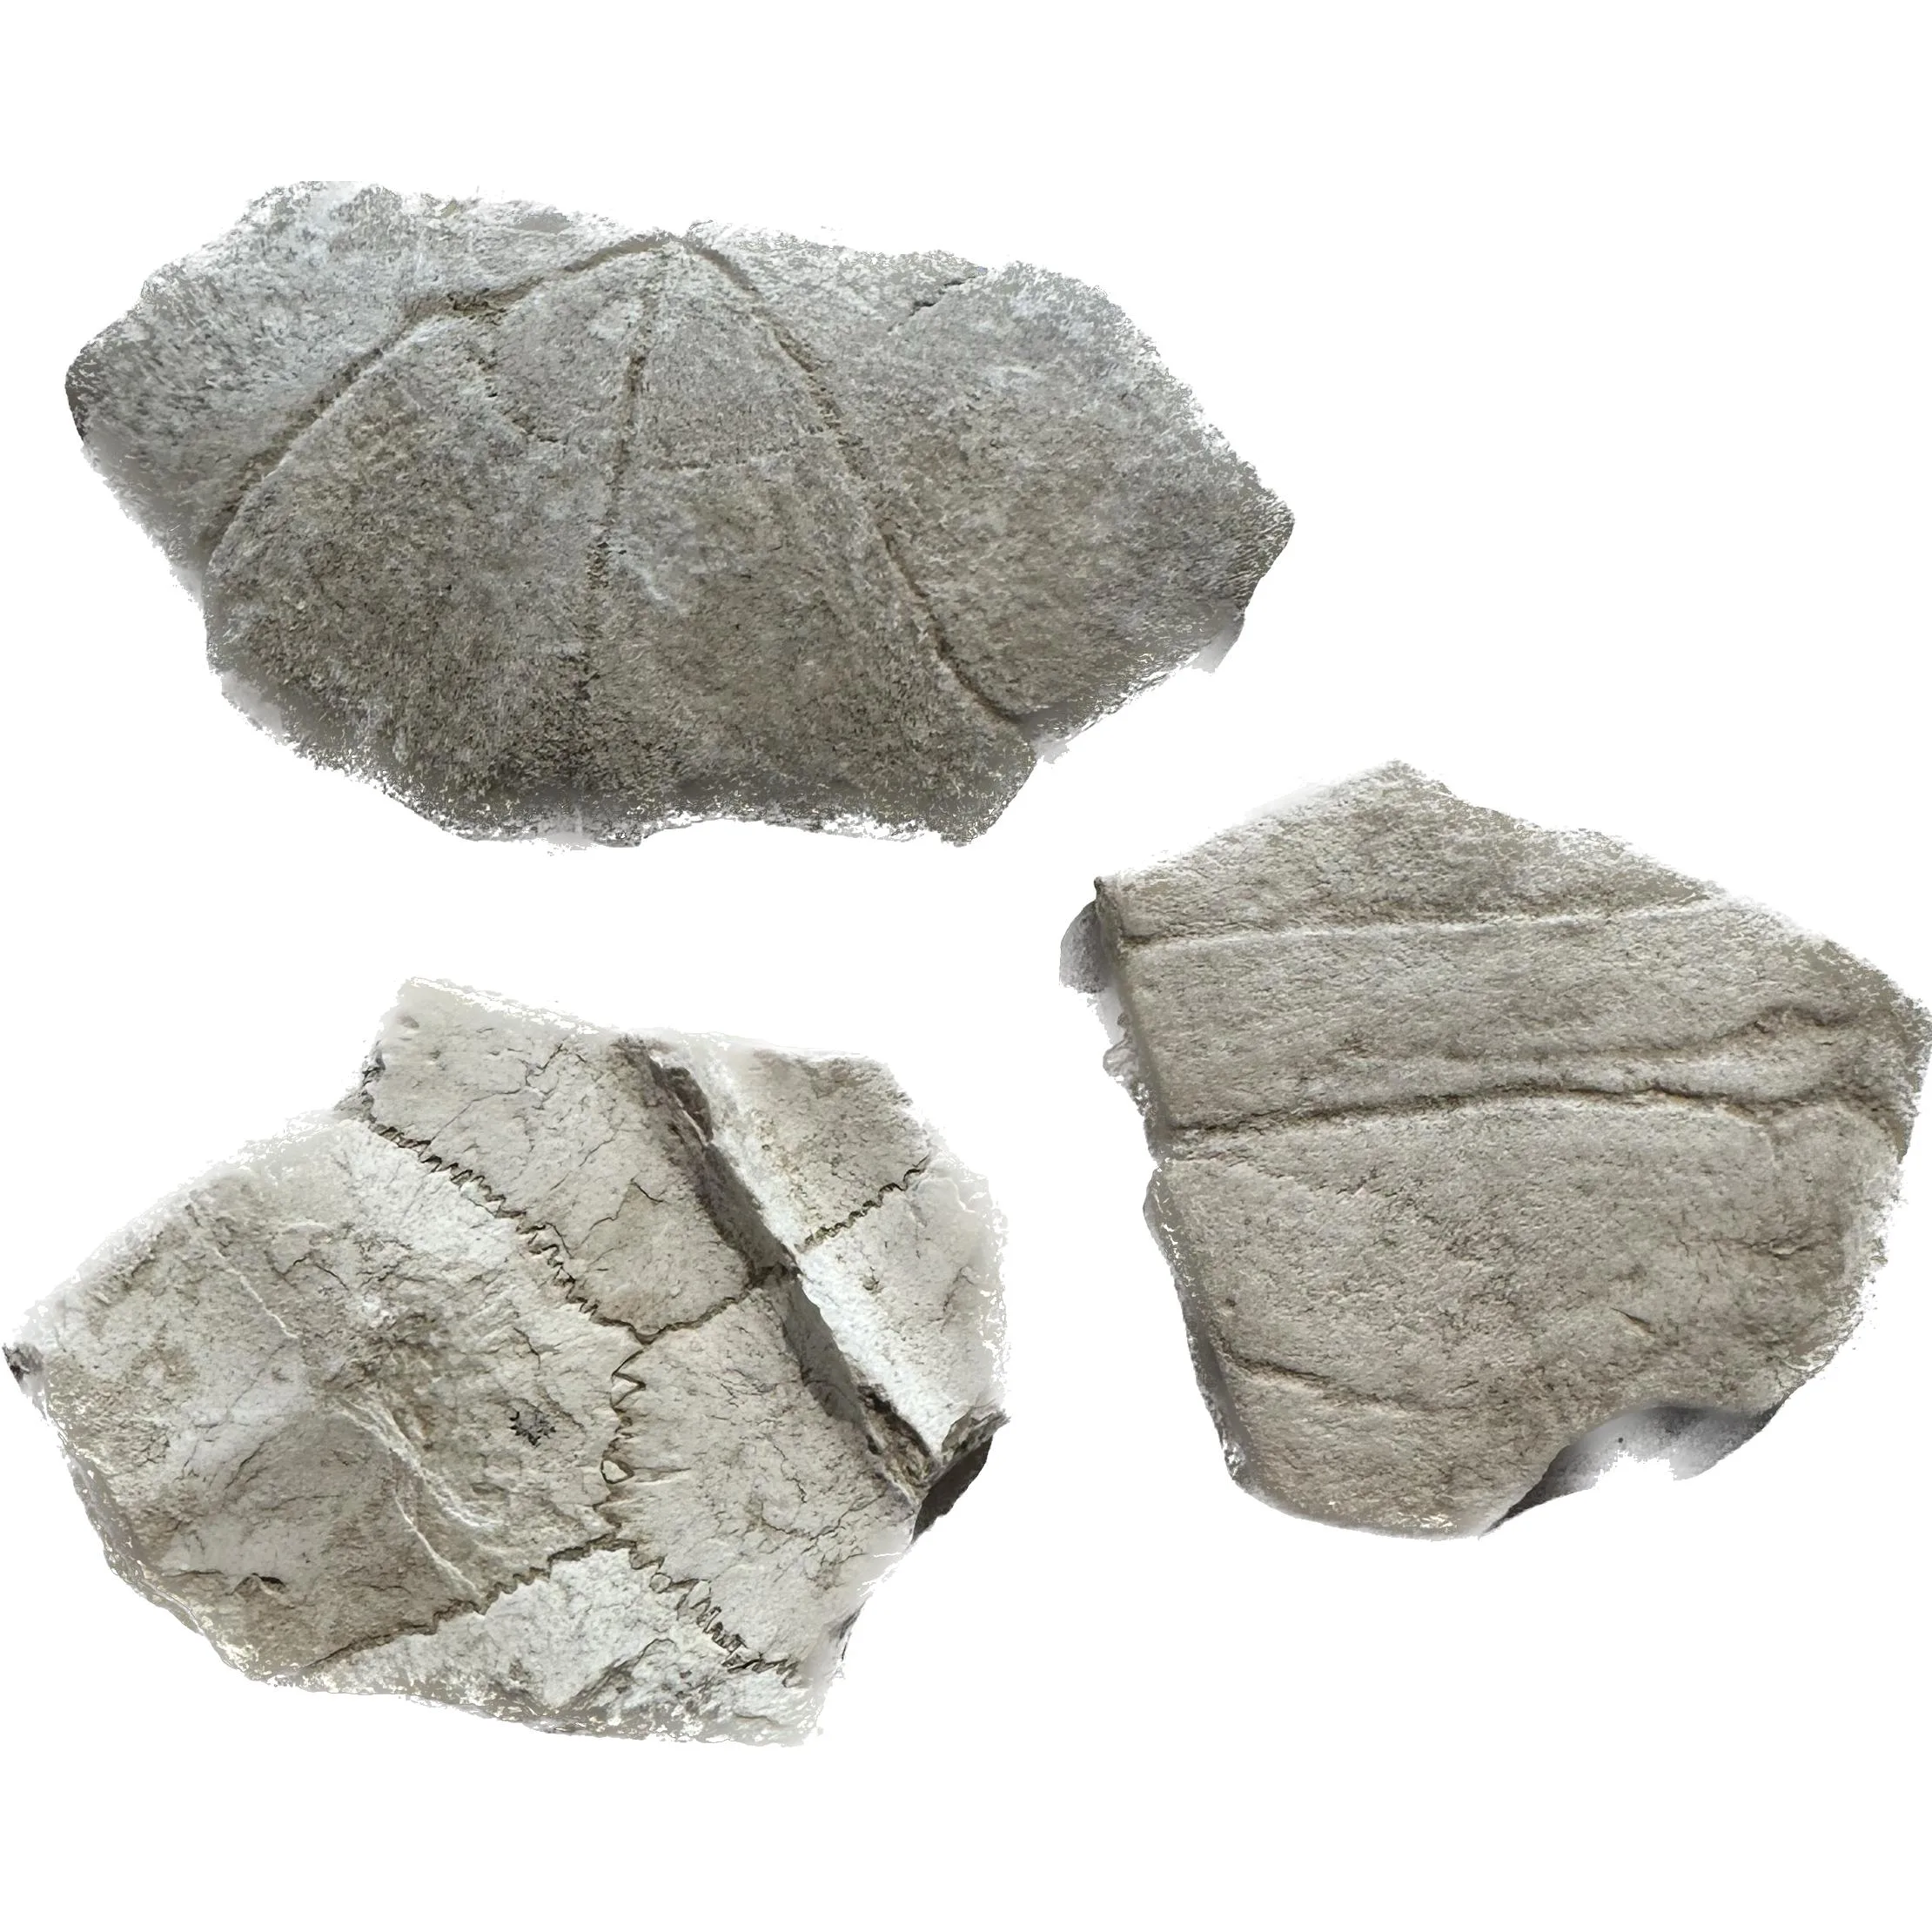 Turtle shell section, Oligocene age Prehistoric Online